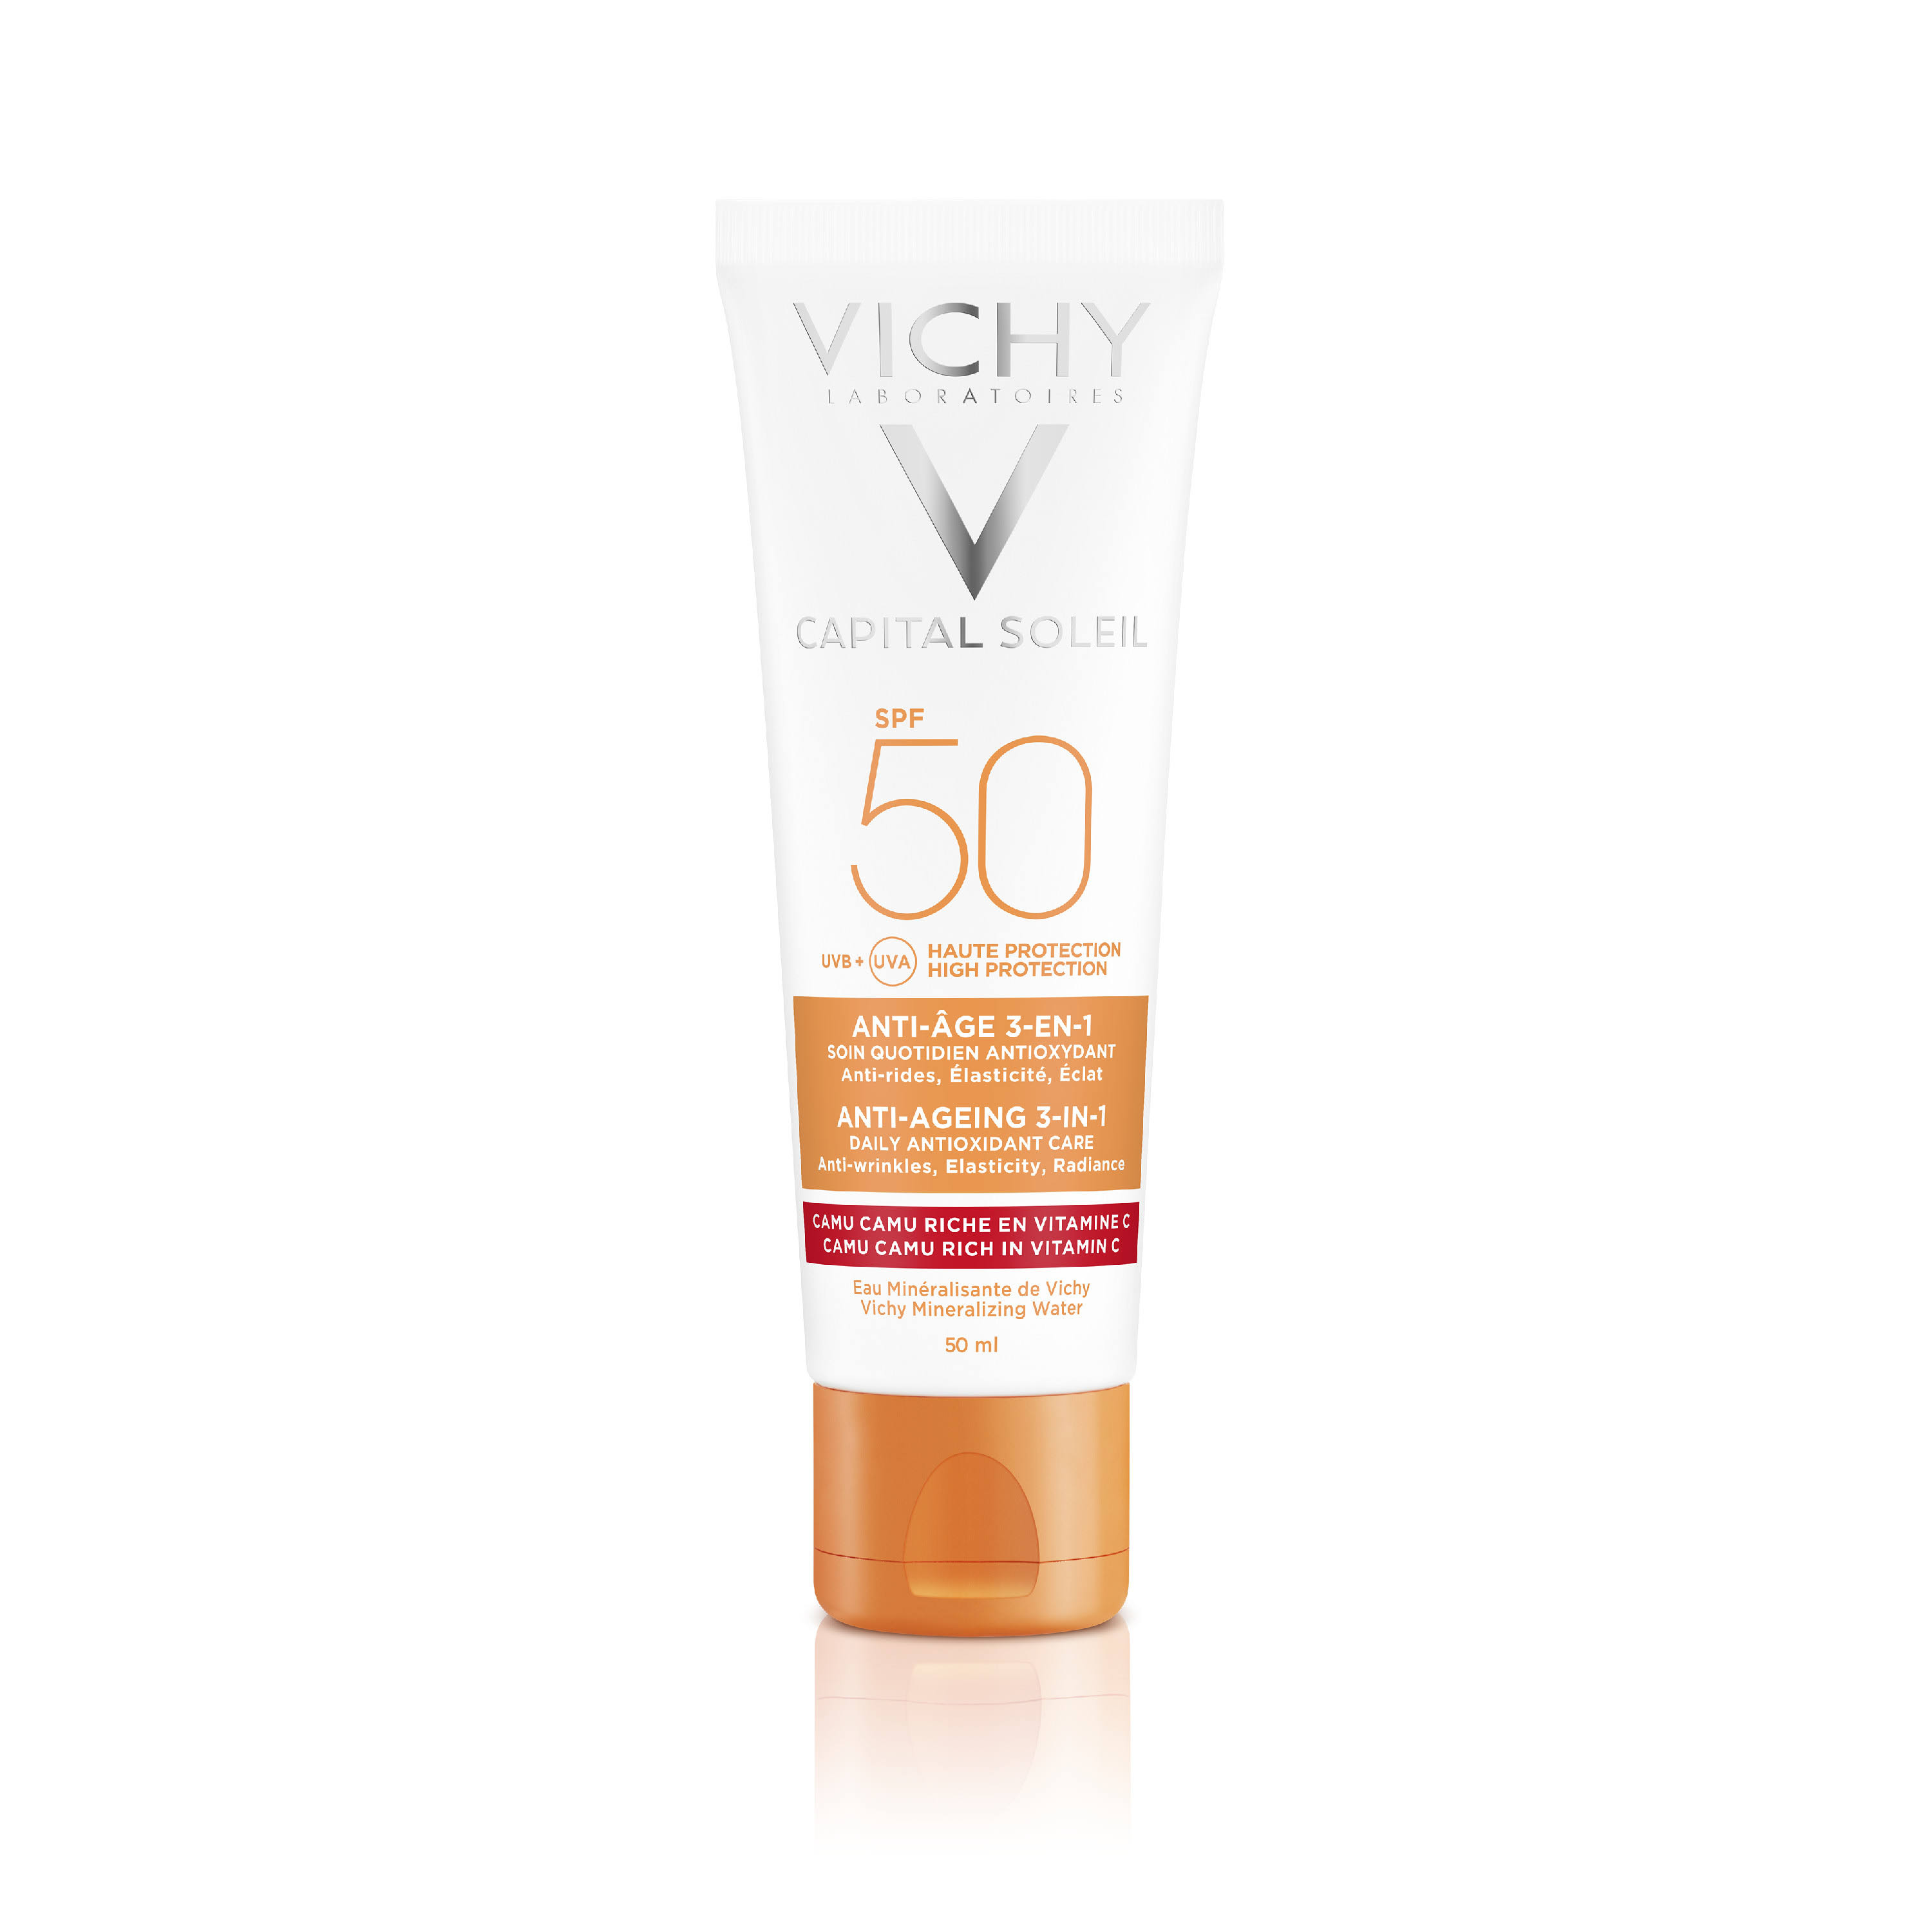 Vichy Ideal Soleil Anti Age SPF50 50ml